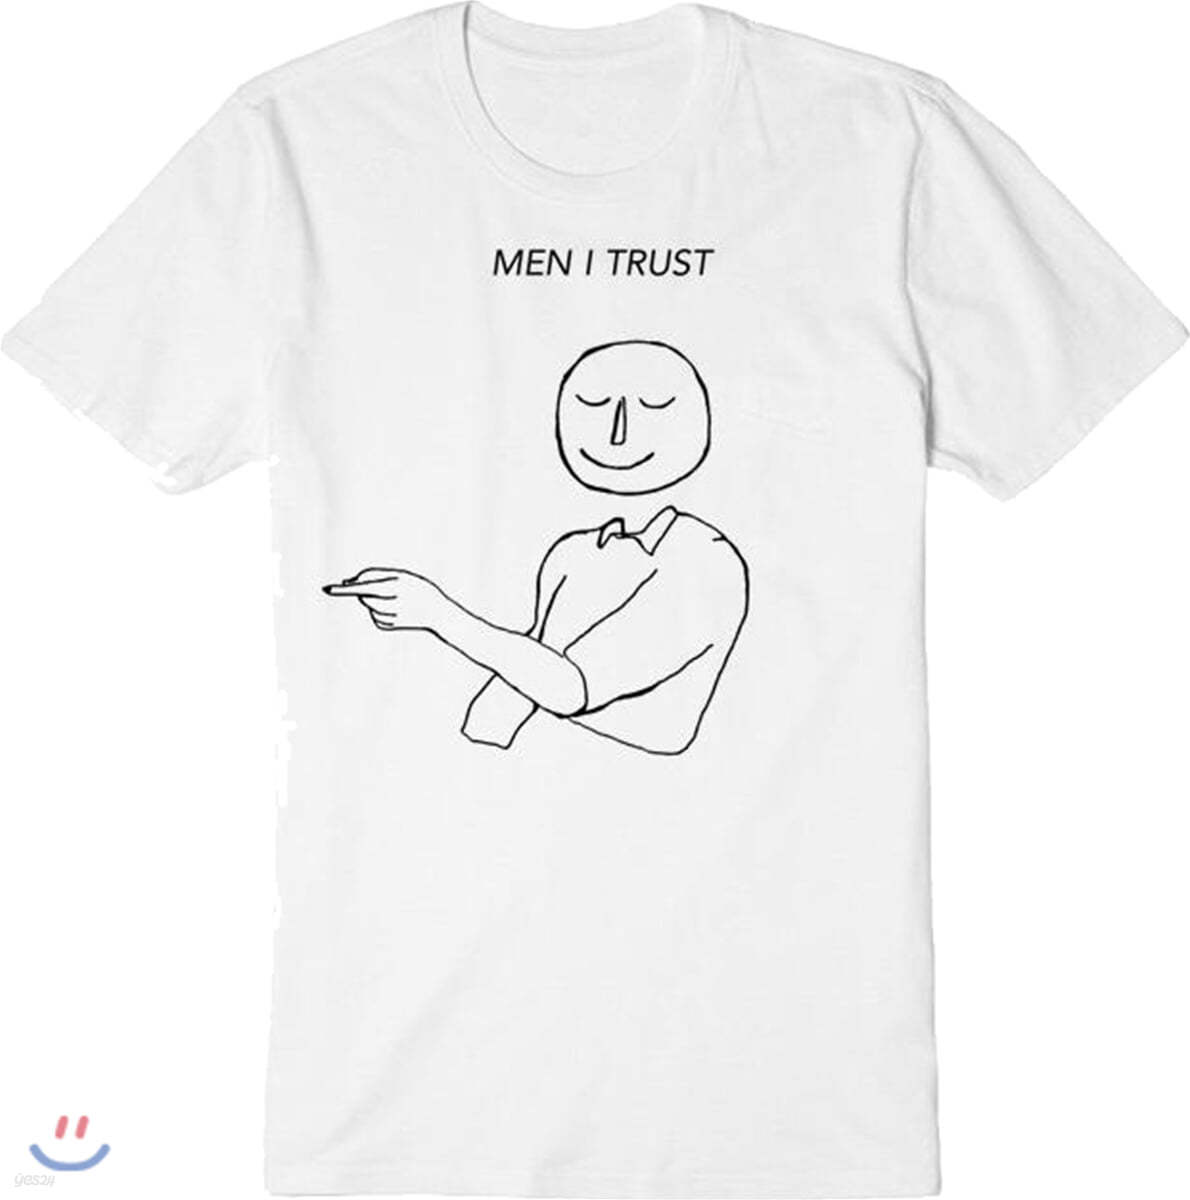 Men I Trust (맨 아이 트러스트) - Men I Turst 티셔츠 [화이트] S